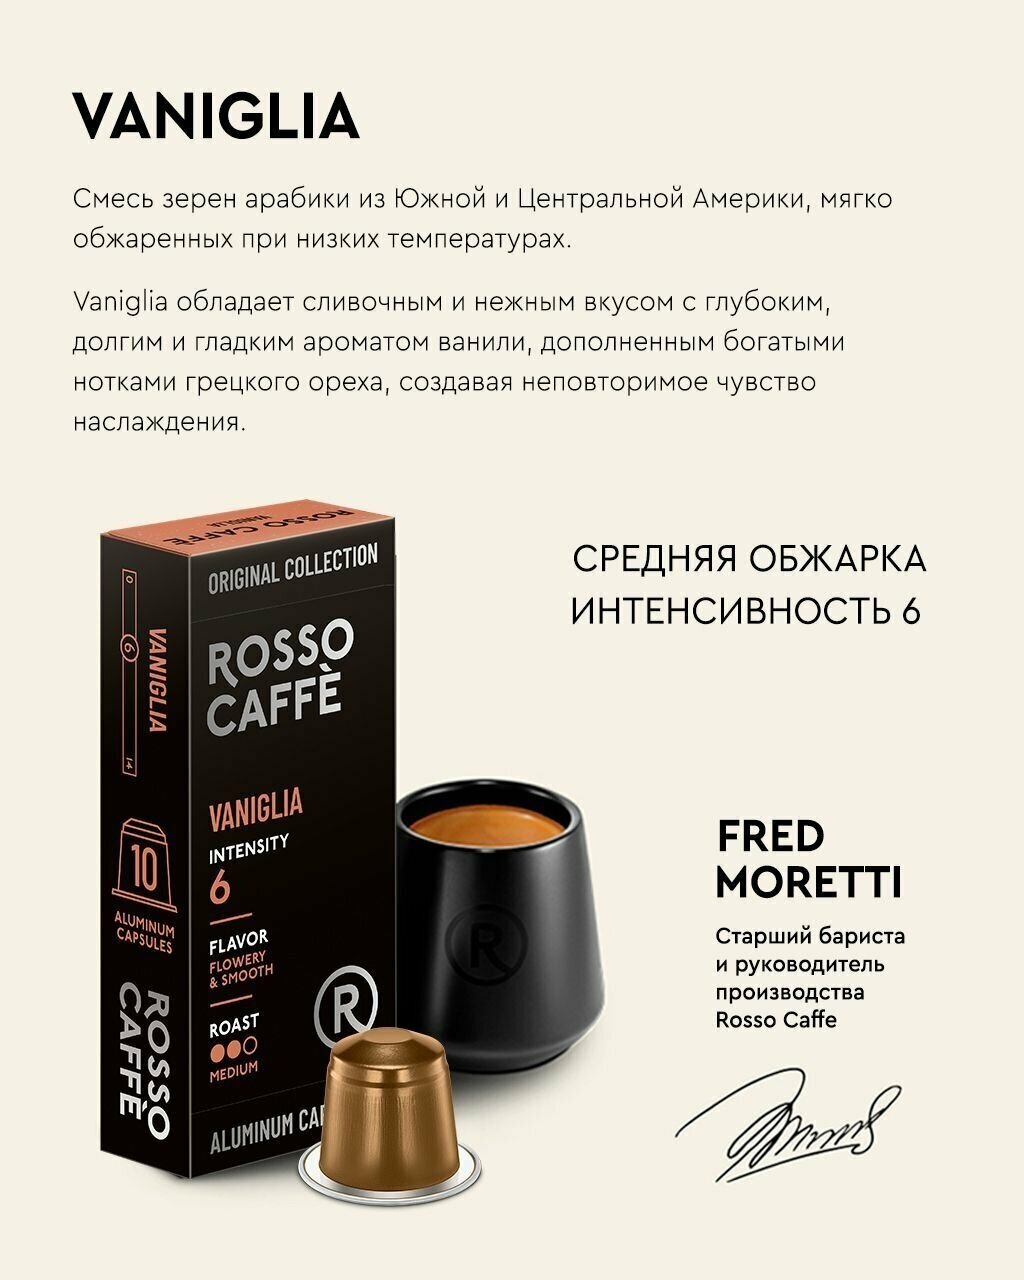 Кофе в капсулах набор Rosso Caffe Select CARAMELLO, VANIGLIA, CREMEBRULEE для кофемашины Nespresso 3 вида 30 алюминиевых капсул.Интенсивность 6 . - фотография № 4